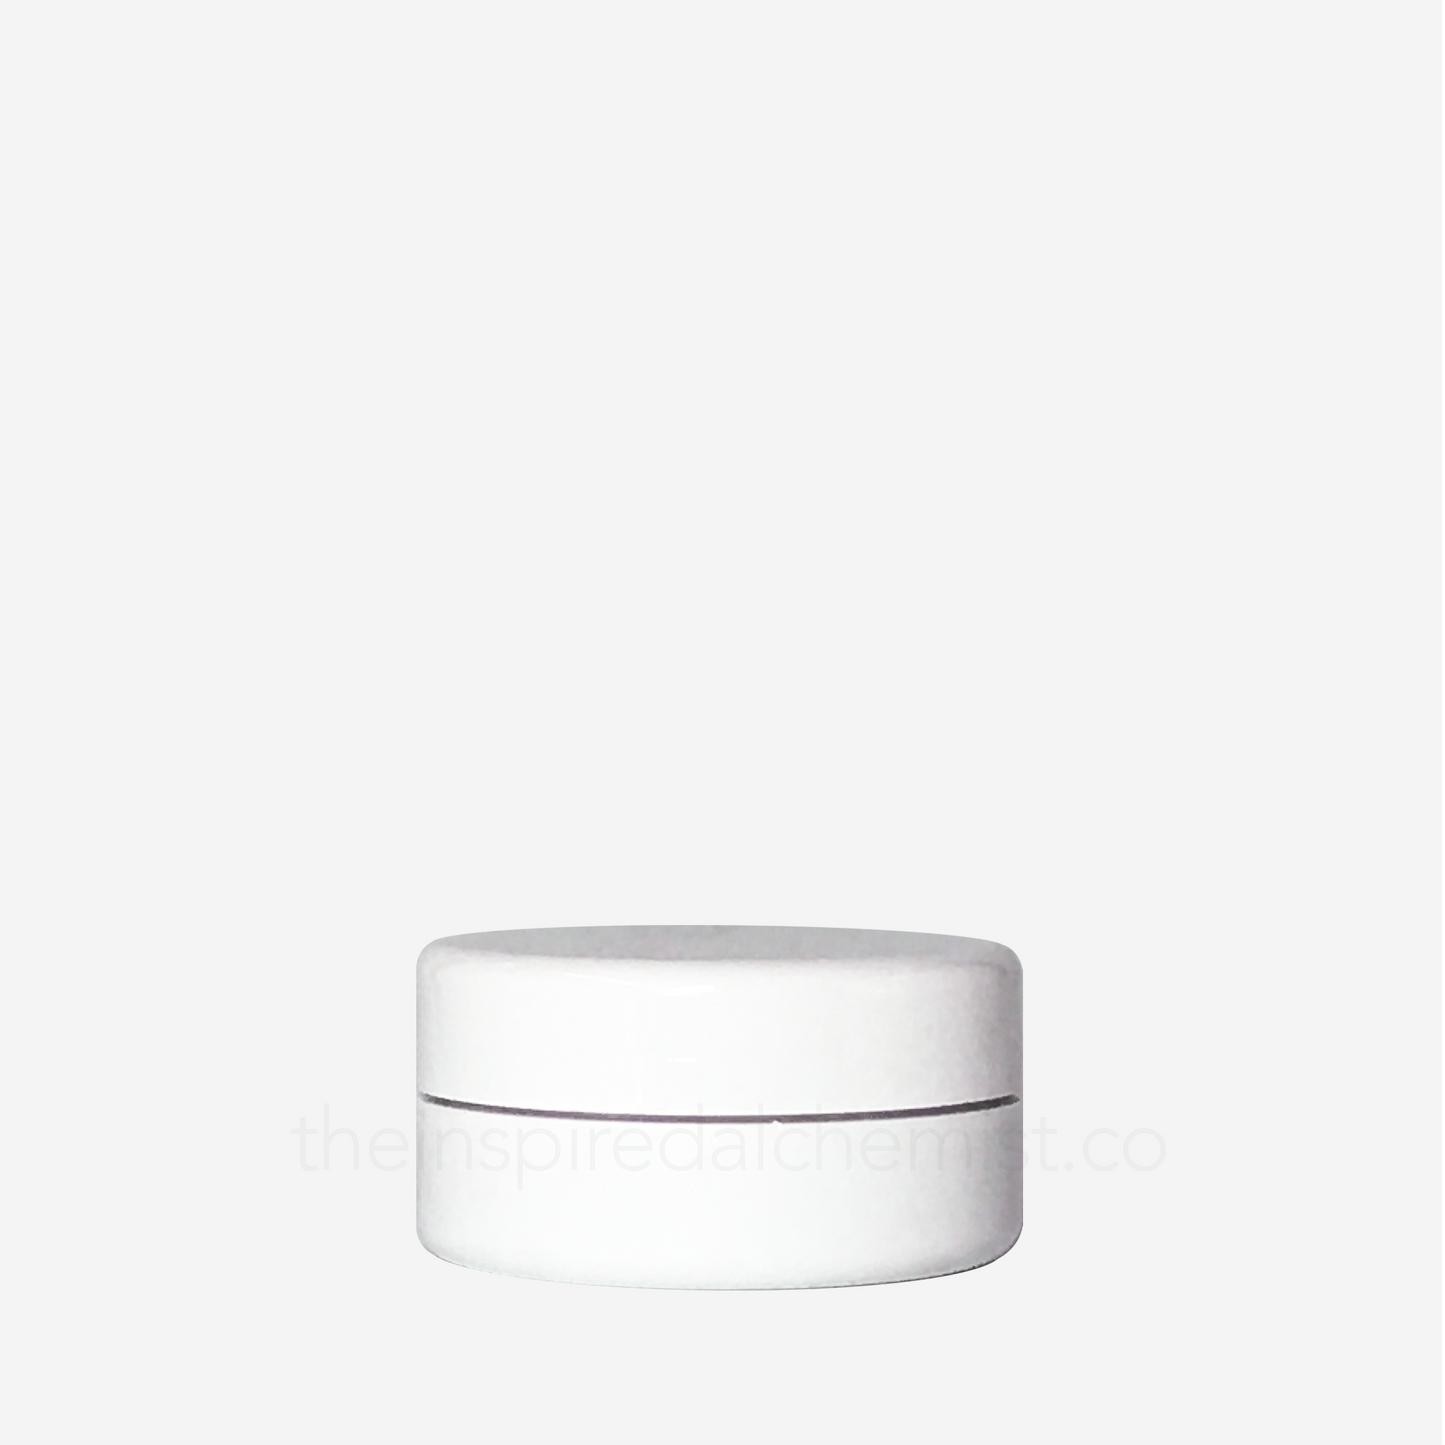 Plastic Cream Jar (Round, White) - Craftology Essentials - Philippines